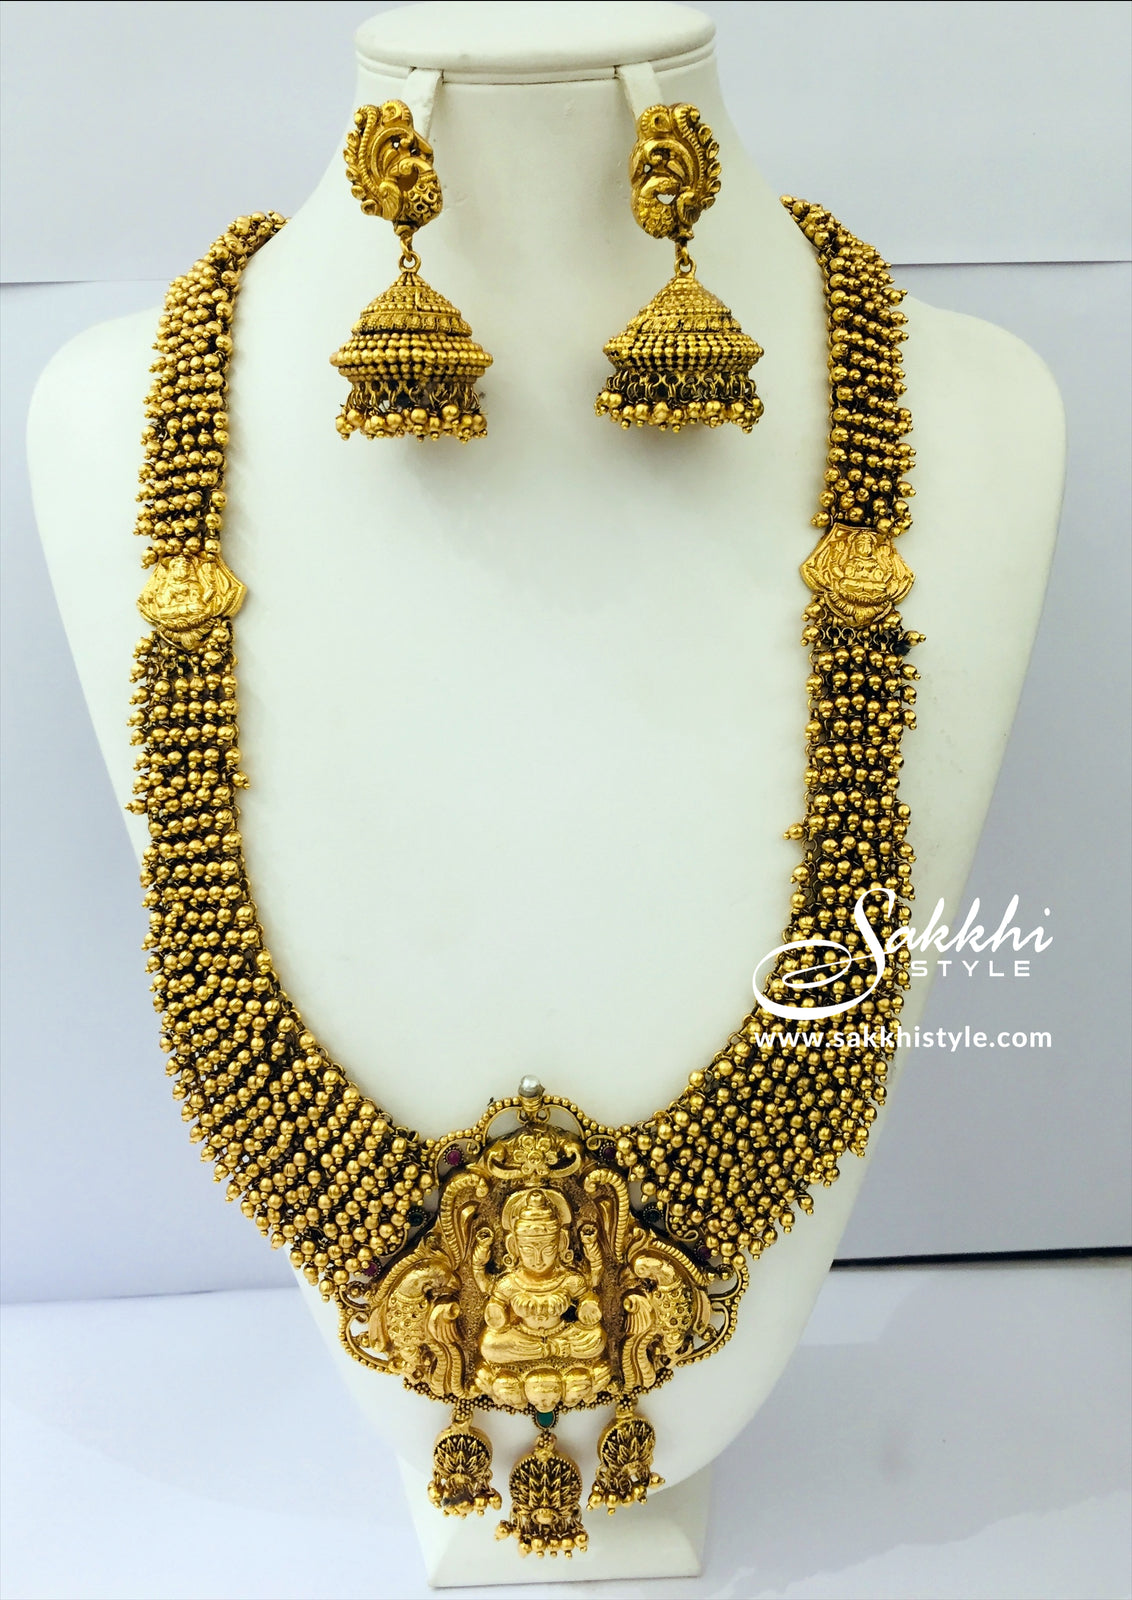 Goddess Laxmi Long Necklace - Sakkhi Style